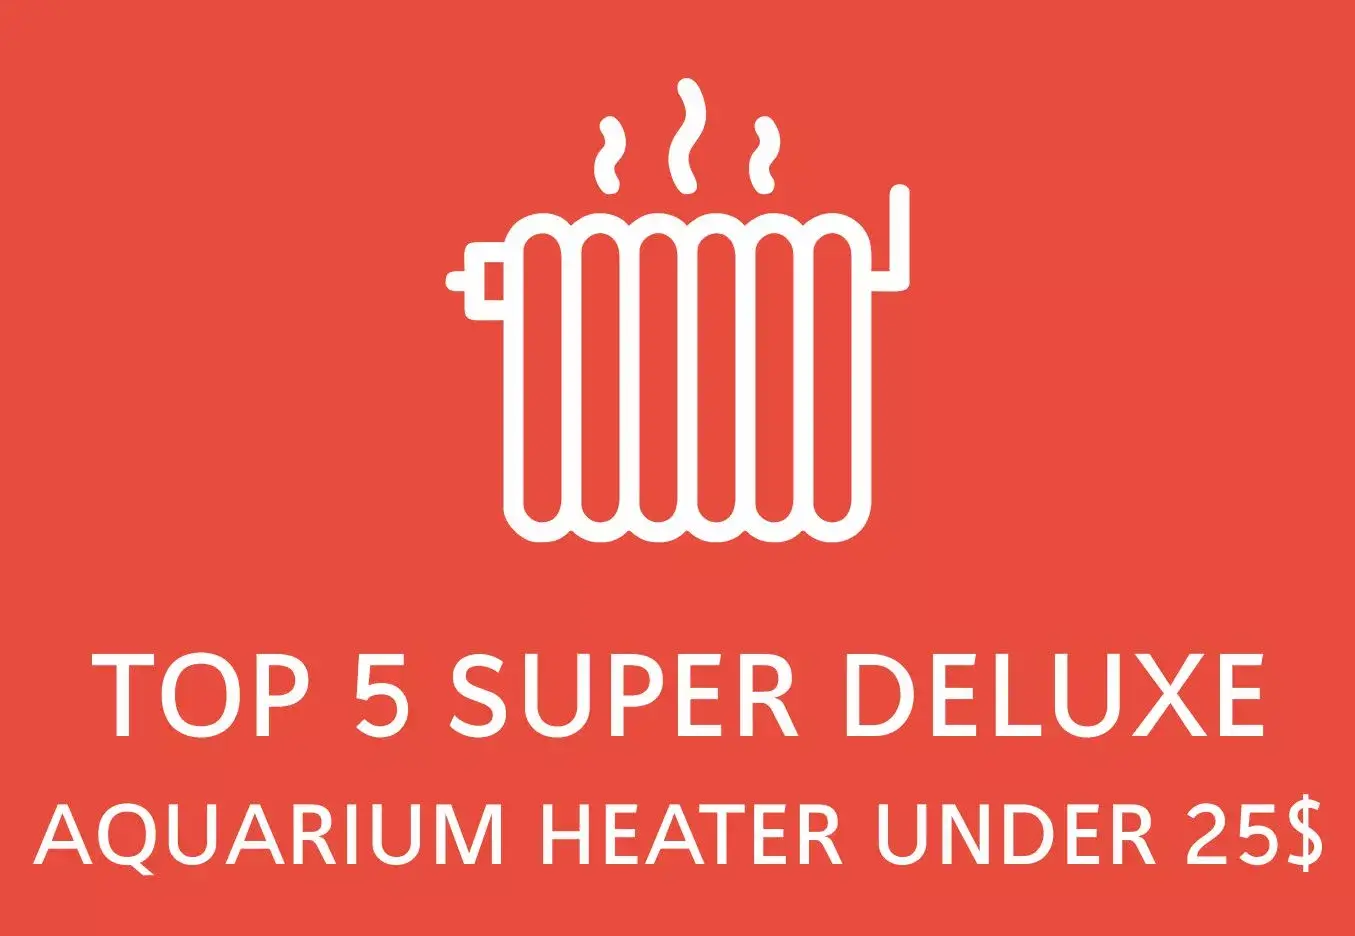 top 5 super deluxe aquarium heaters under $25